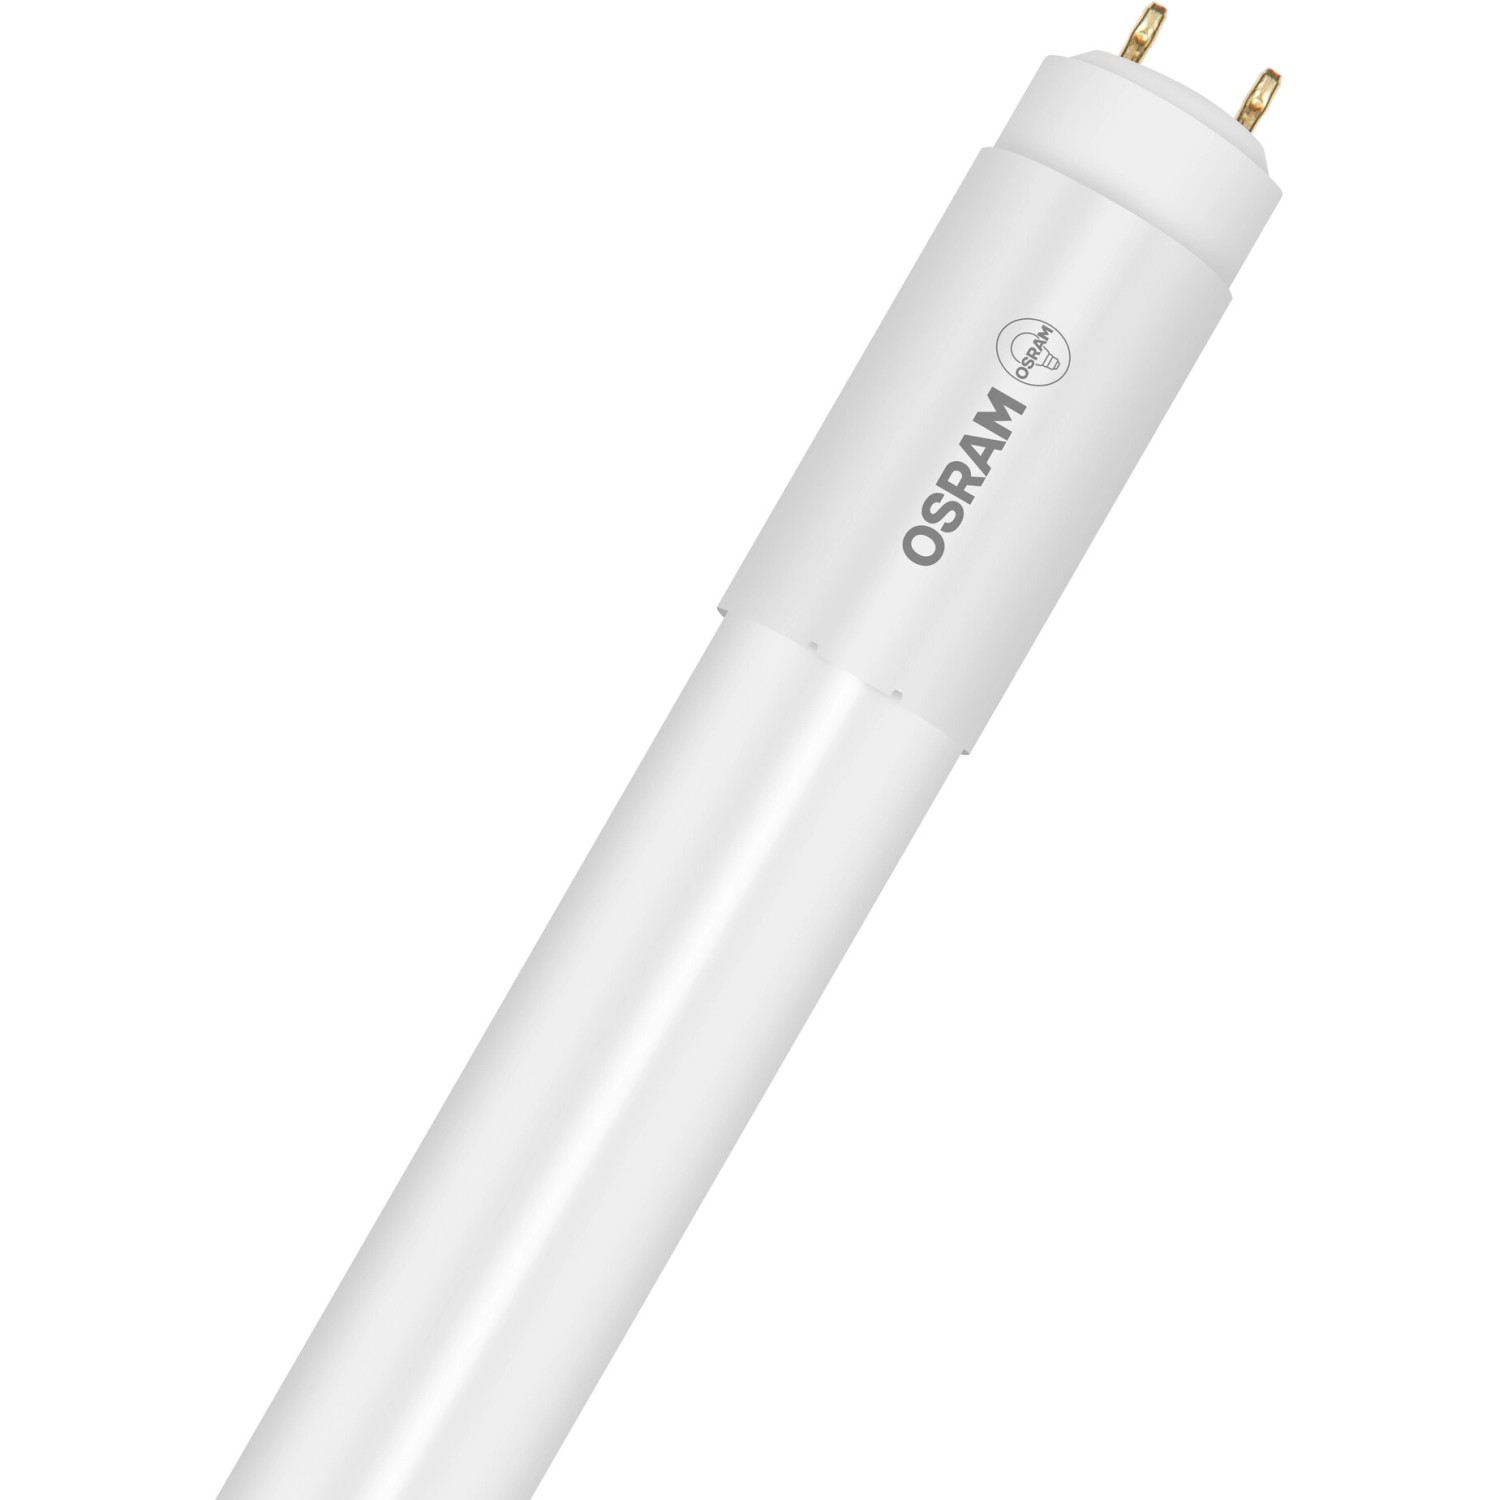 Osram LED-Leuchtstofflampen G13 Röhre 8W 800lm 60,3 cm x 2,8 cm Warmweiß